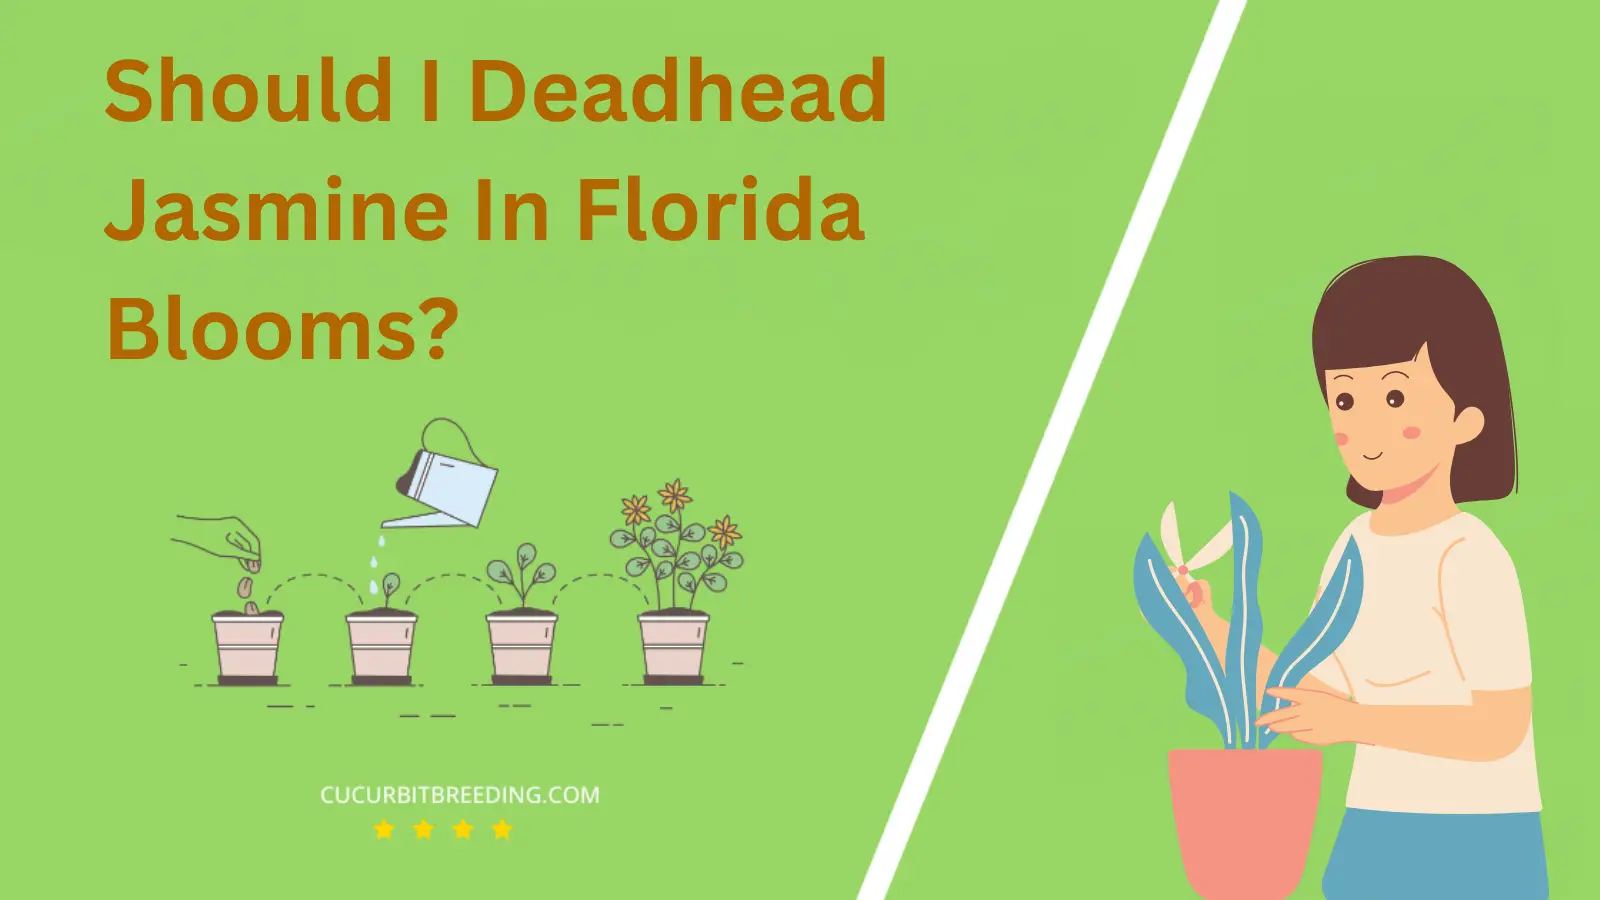 Should I Deadhead Jasmine In Florida Blooms?